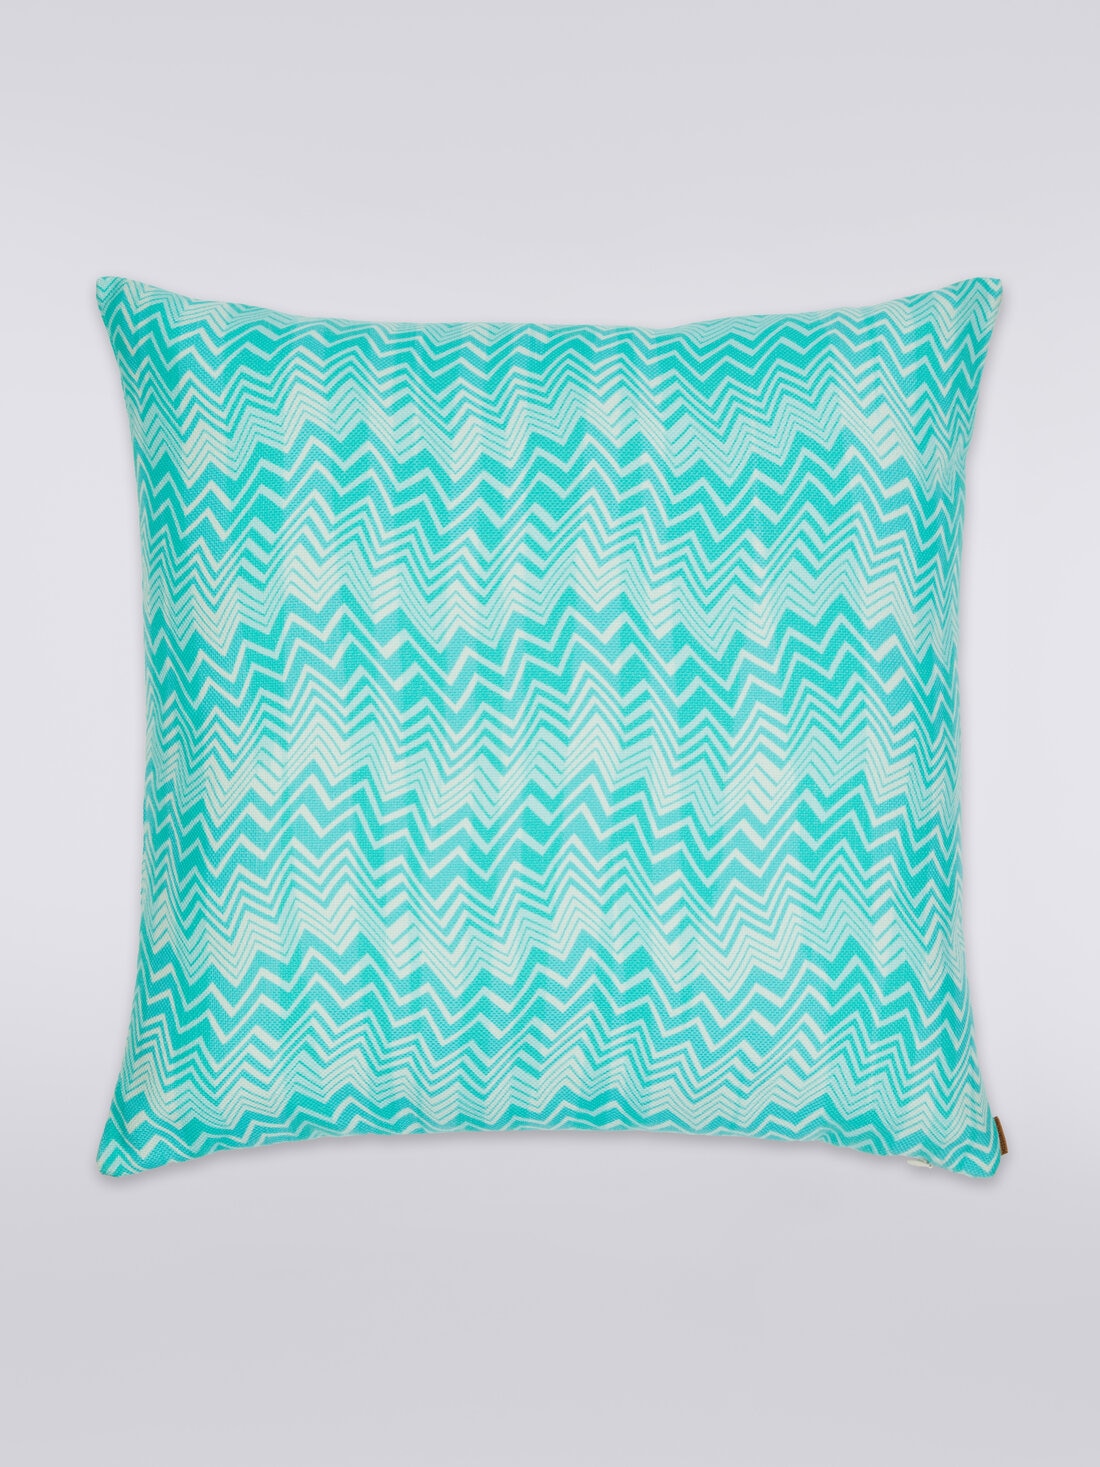 Belize cushion 60x60 cm, Multicoloured  - 8051275581208 - 0